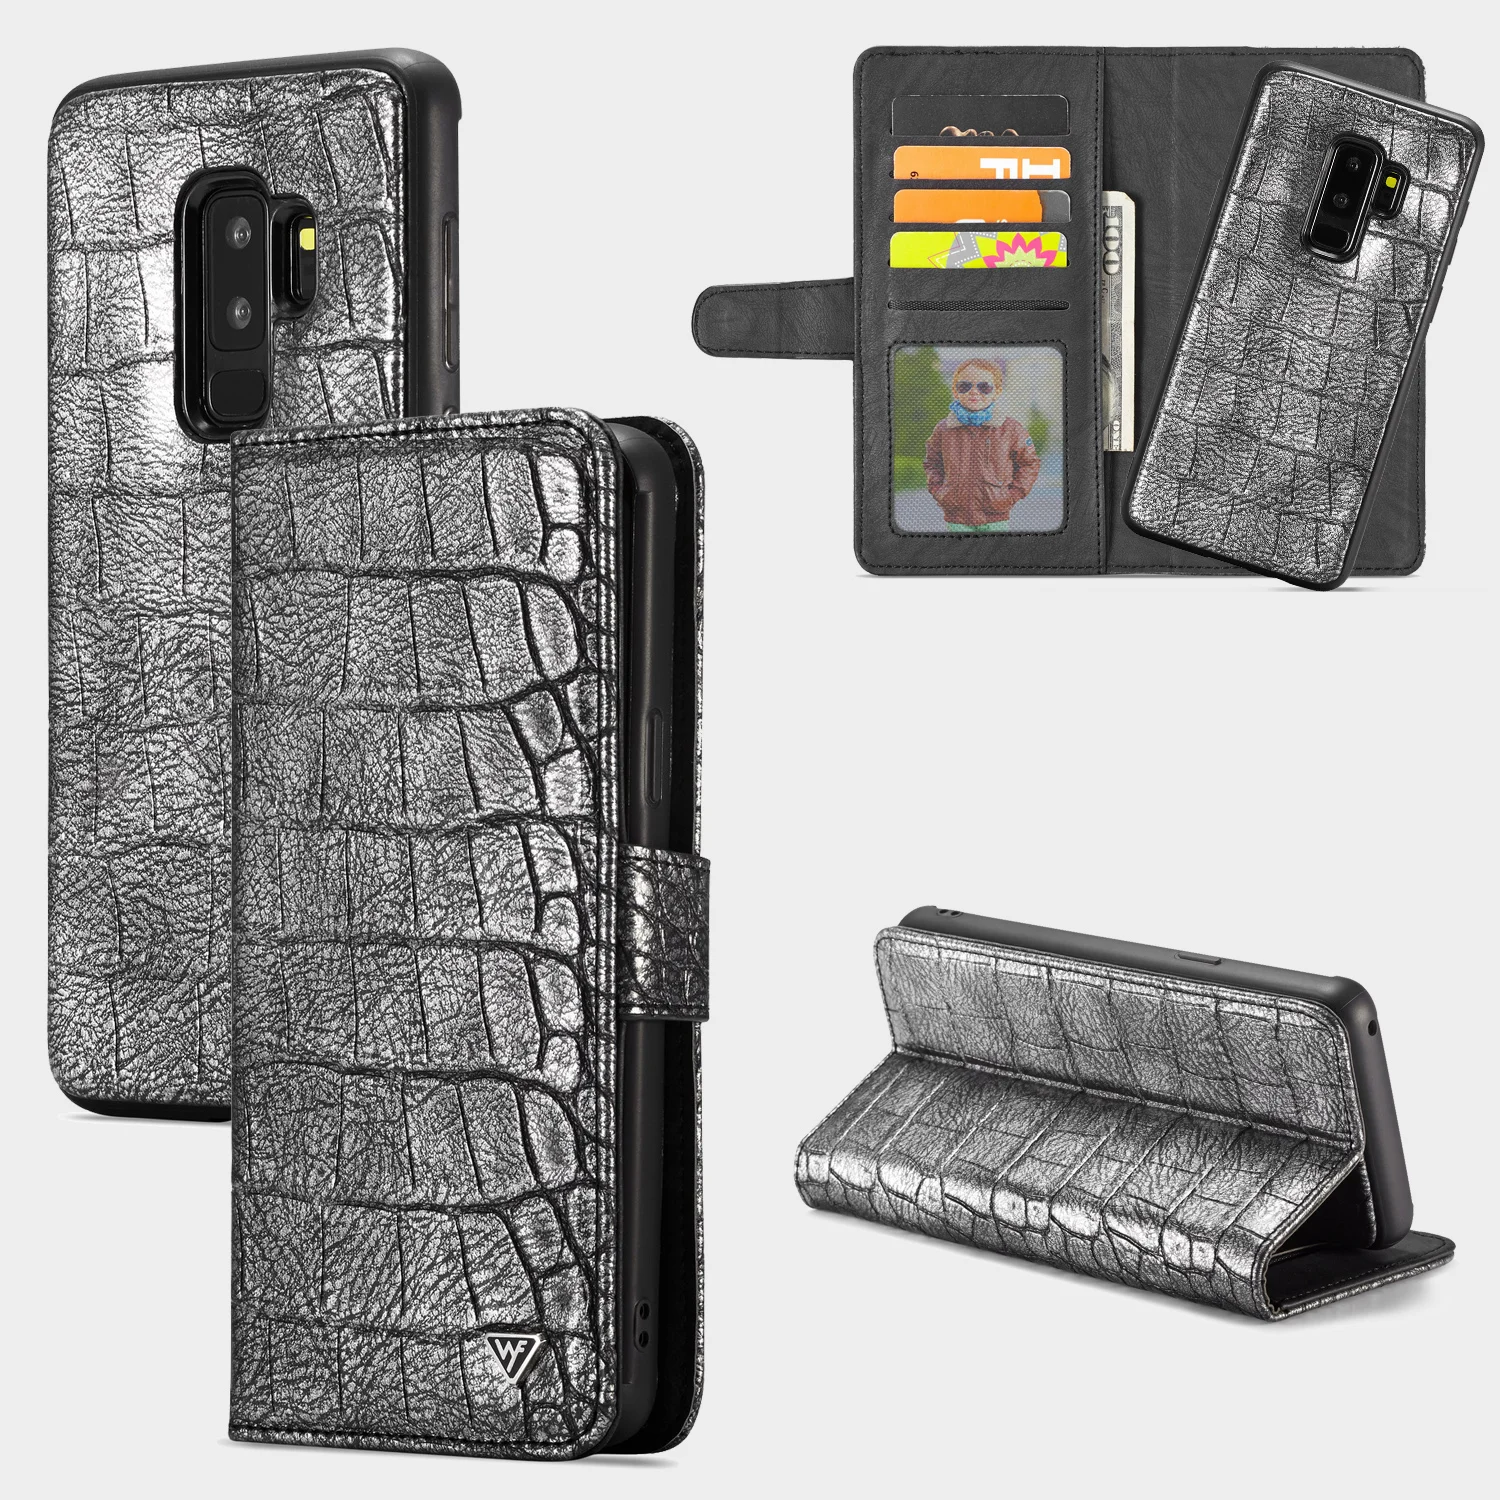 WHATIF для samsung Galaxy S9 S9 Plus S9+ Note 9 чехол Роскошный крокодиловый Змеиный кожаный флип бизнес 2 в 1 кошелек чехол s Обложка сумка